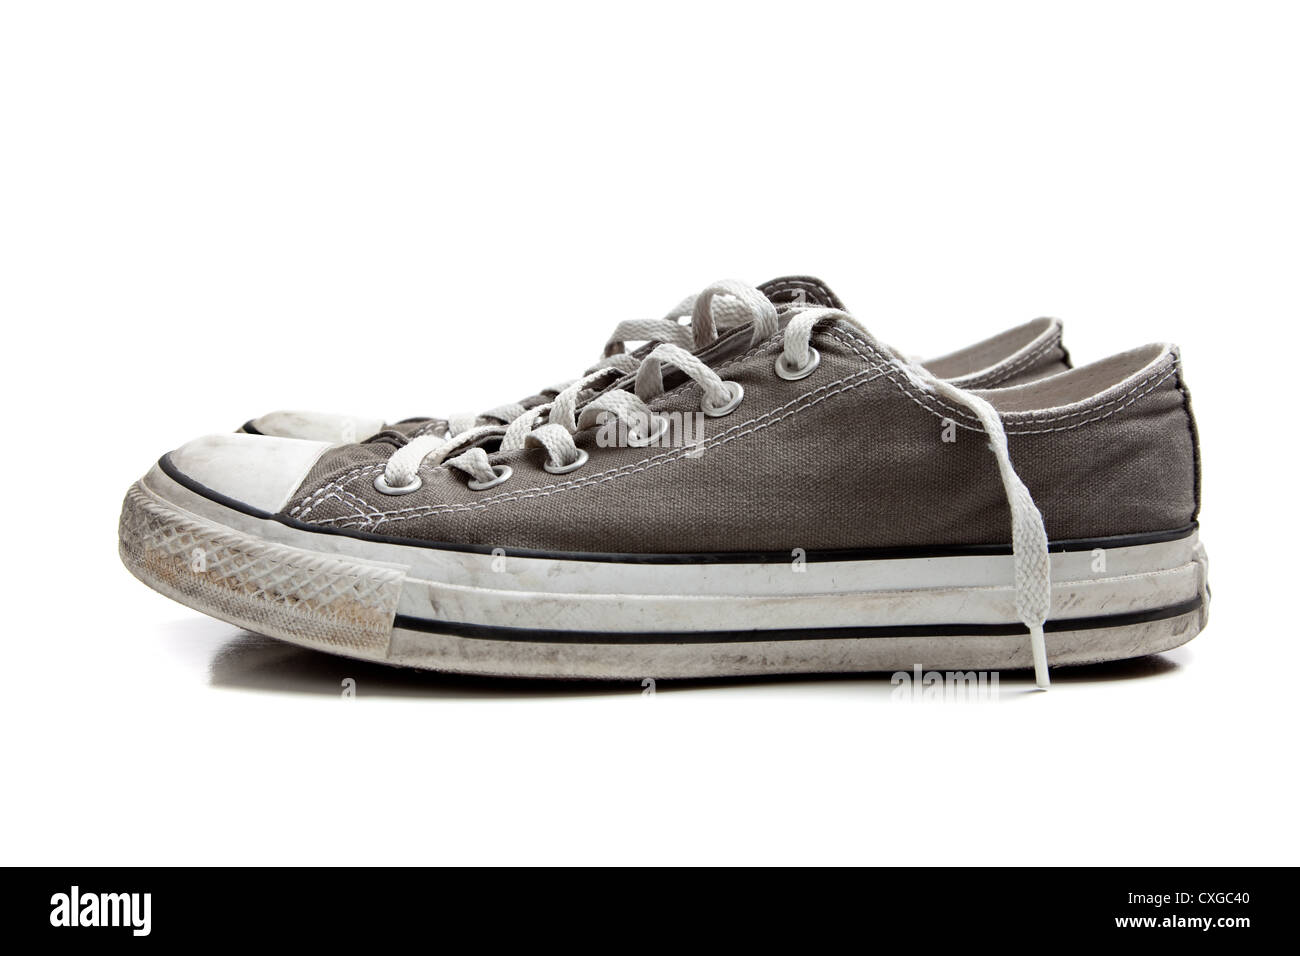 Une paire de chaussures retro gris sur fond blanc Banque D'Images